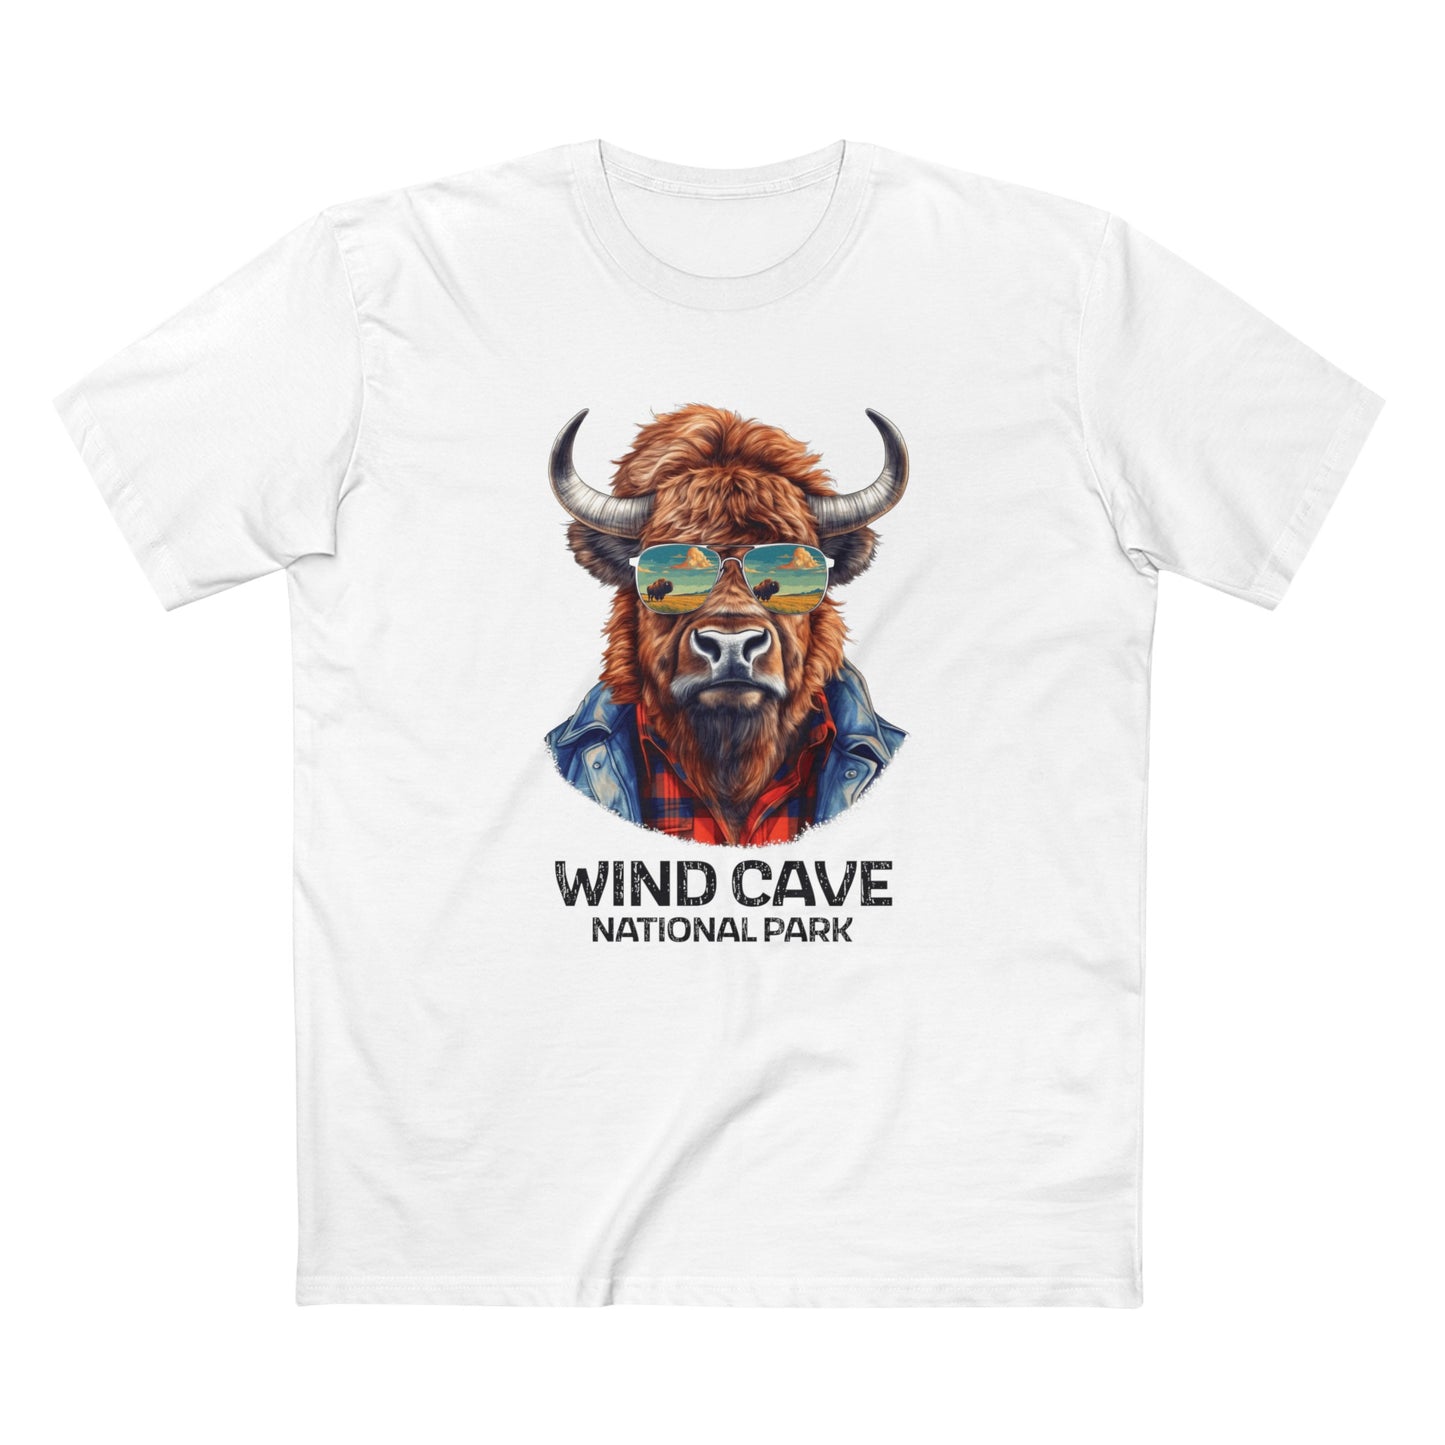 Wind Cave National Park T-Shirt - Bison